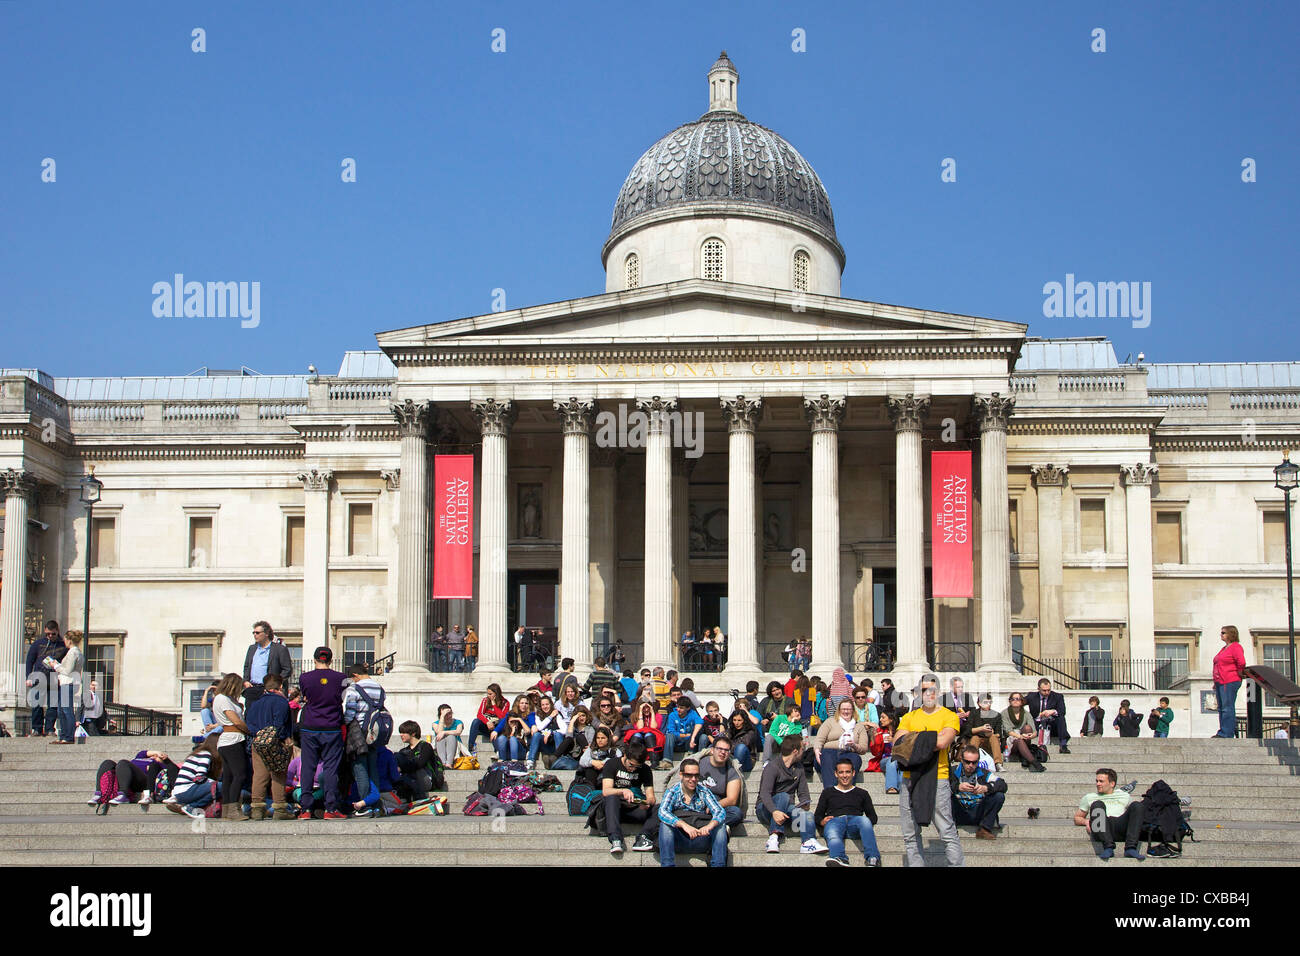 Les visiteurs et les touristes en dehors de la National Gallery, Trafalgar Square, Londres, Angleterre, Royaume-Uni, Europe Banque D'Images